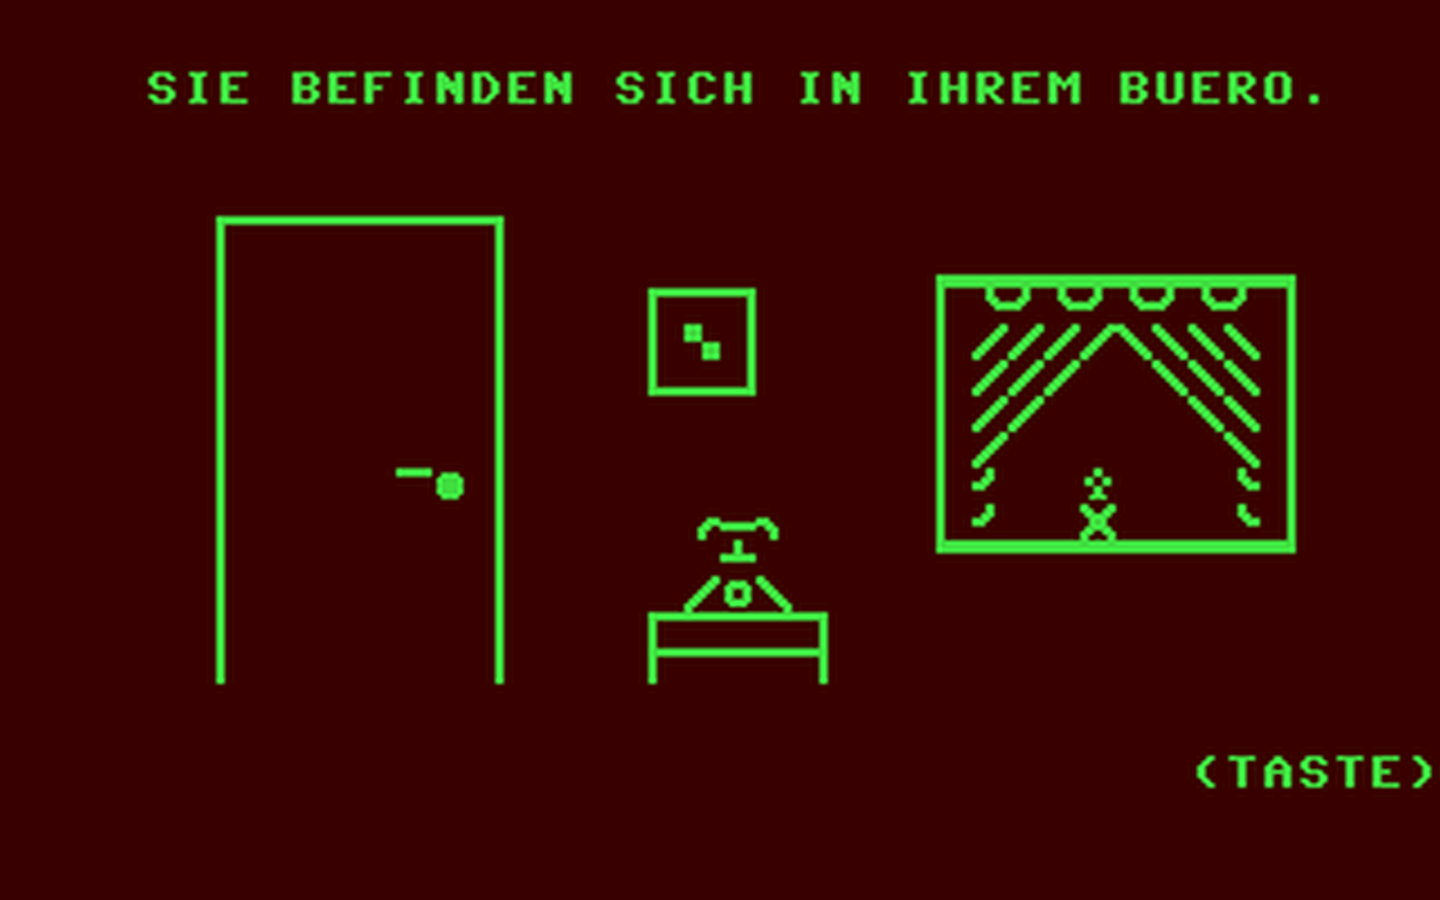 C64 GameBase Geisterjäger 1985